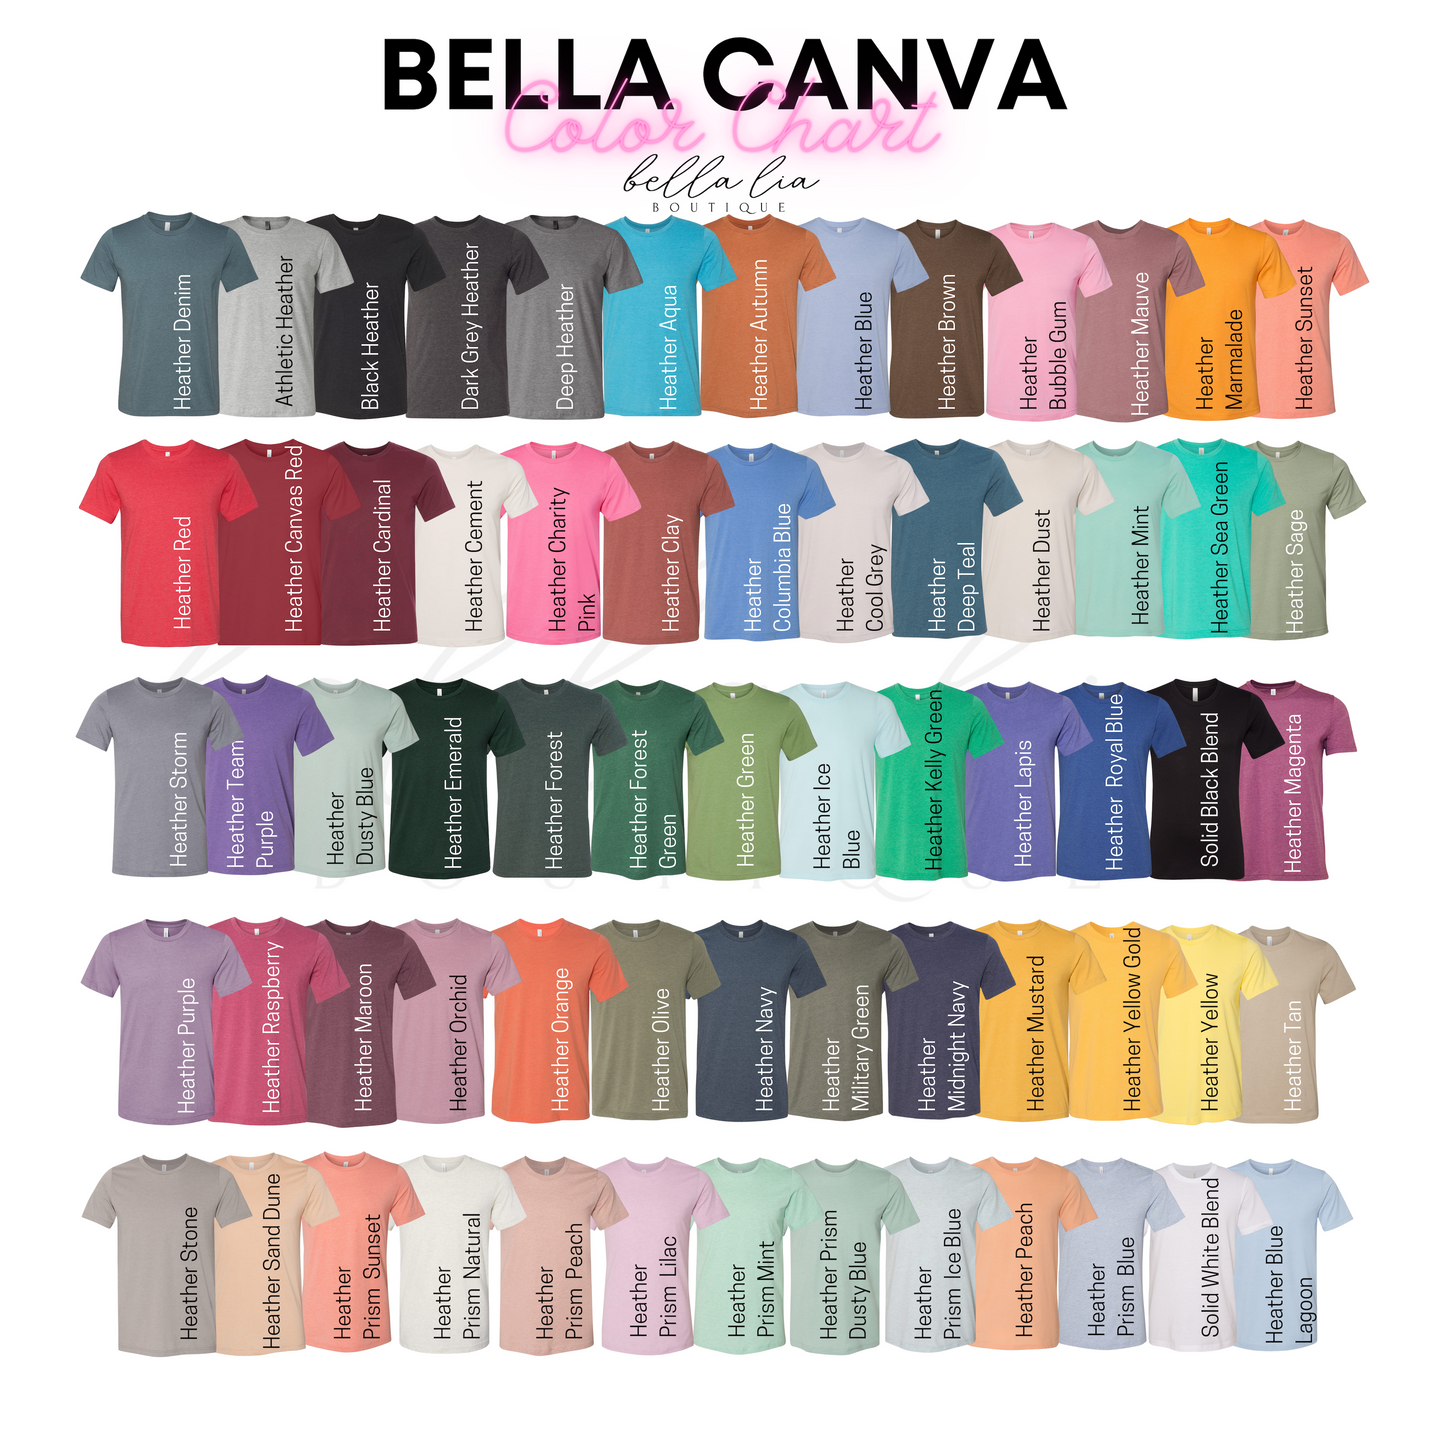 Cold AF Graphic Tee or Sweatshirt - Bella Lia Boutique